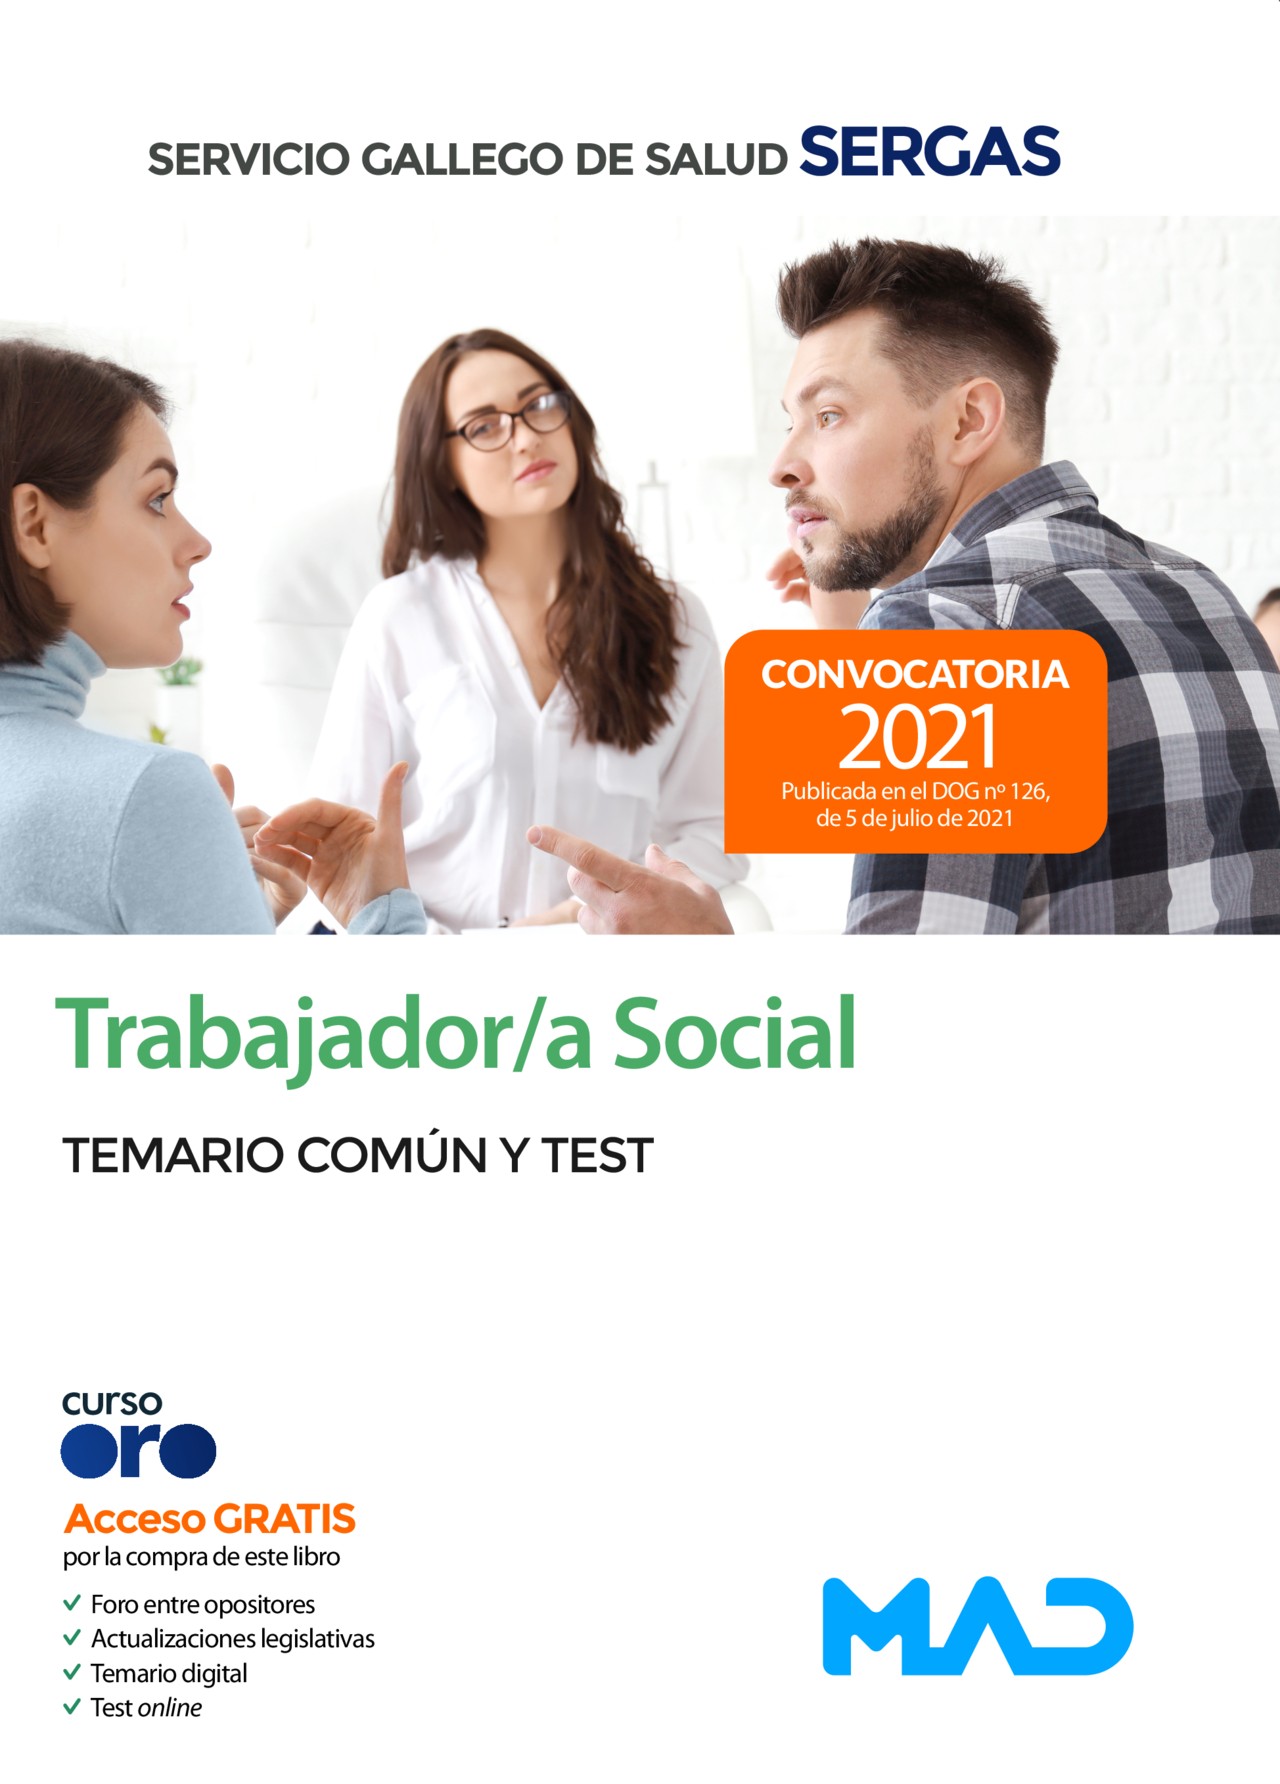 Trabajador Social Temario común y test